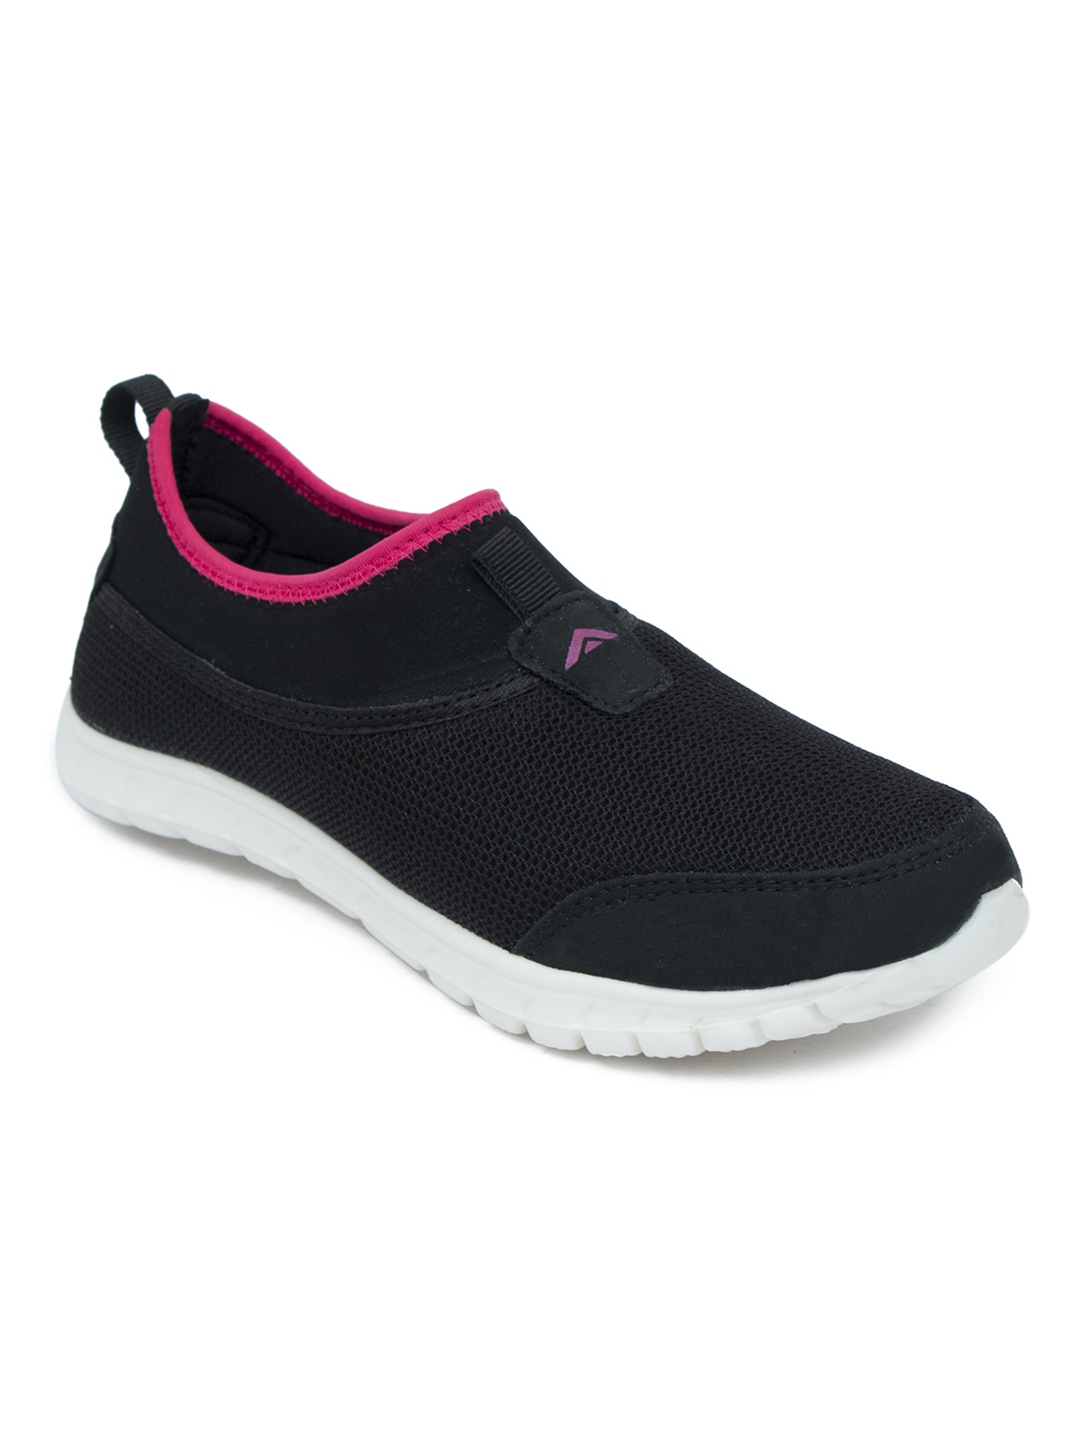 Buy ASIAN Women Black Running Shoes - Sports Shoes for Women ...